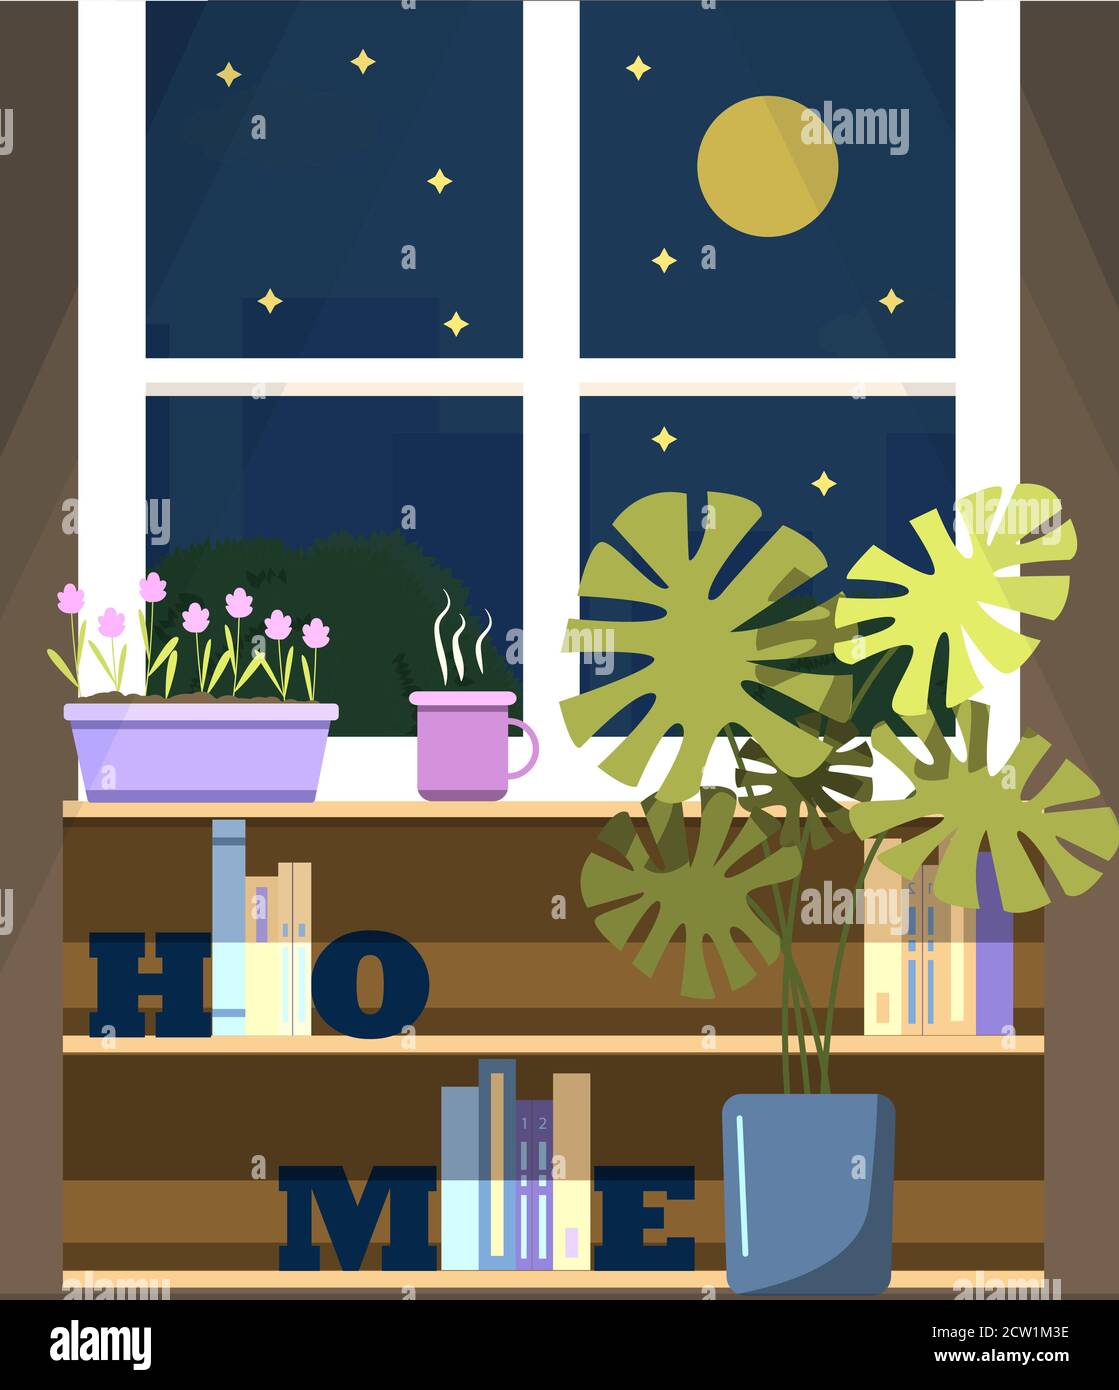 Vektorfenster mit Blick auf die Nachtstadt, mit einer Blume auf der Fensterbank und einer Tasse Tee. Eine flache Illustration eines Raumes mit Bücherregalen, Buchhaltern, einer Hausblume in einem Monstera-Topf und einem Fenster mit Blick auf den Mond, Hochhäuser und Bäume. Gemütliches Haus bei warmem Sommerwetter. Stock Vektor